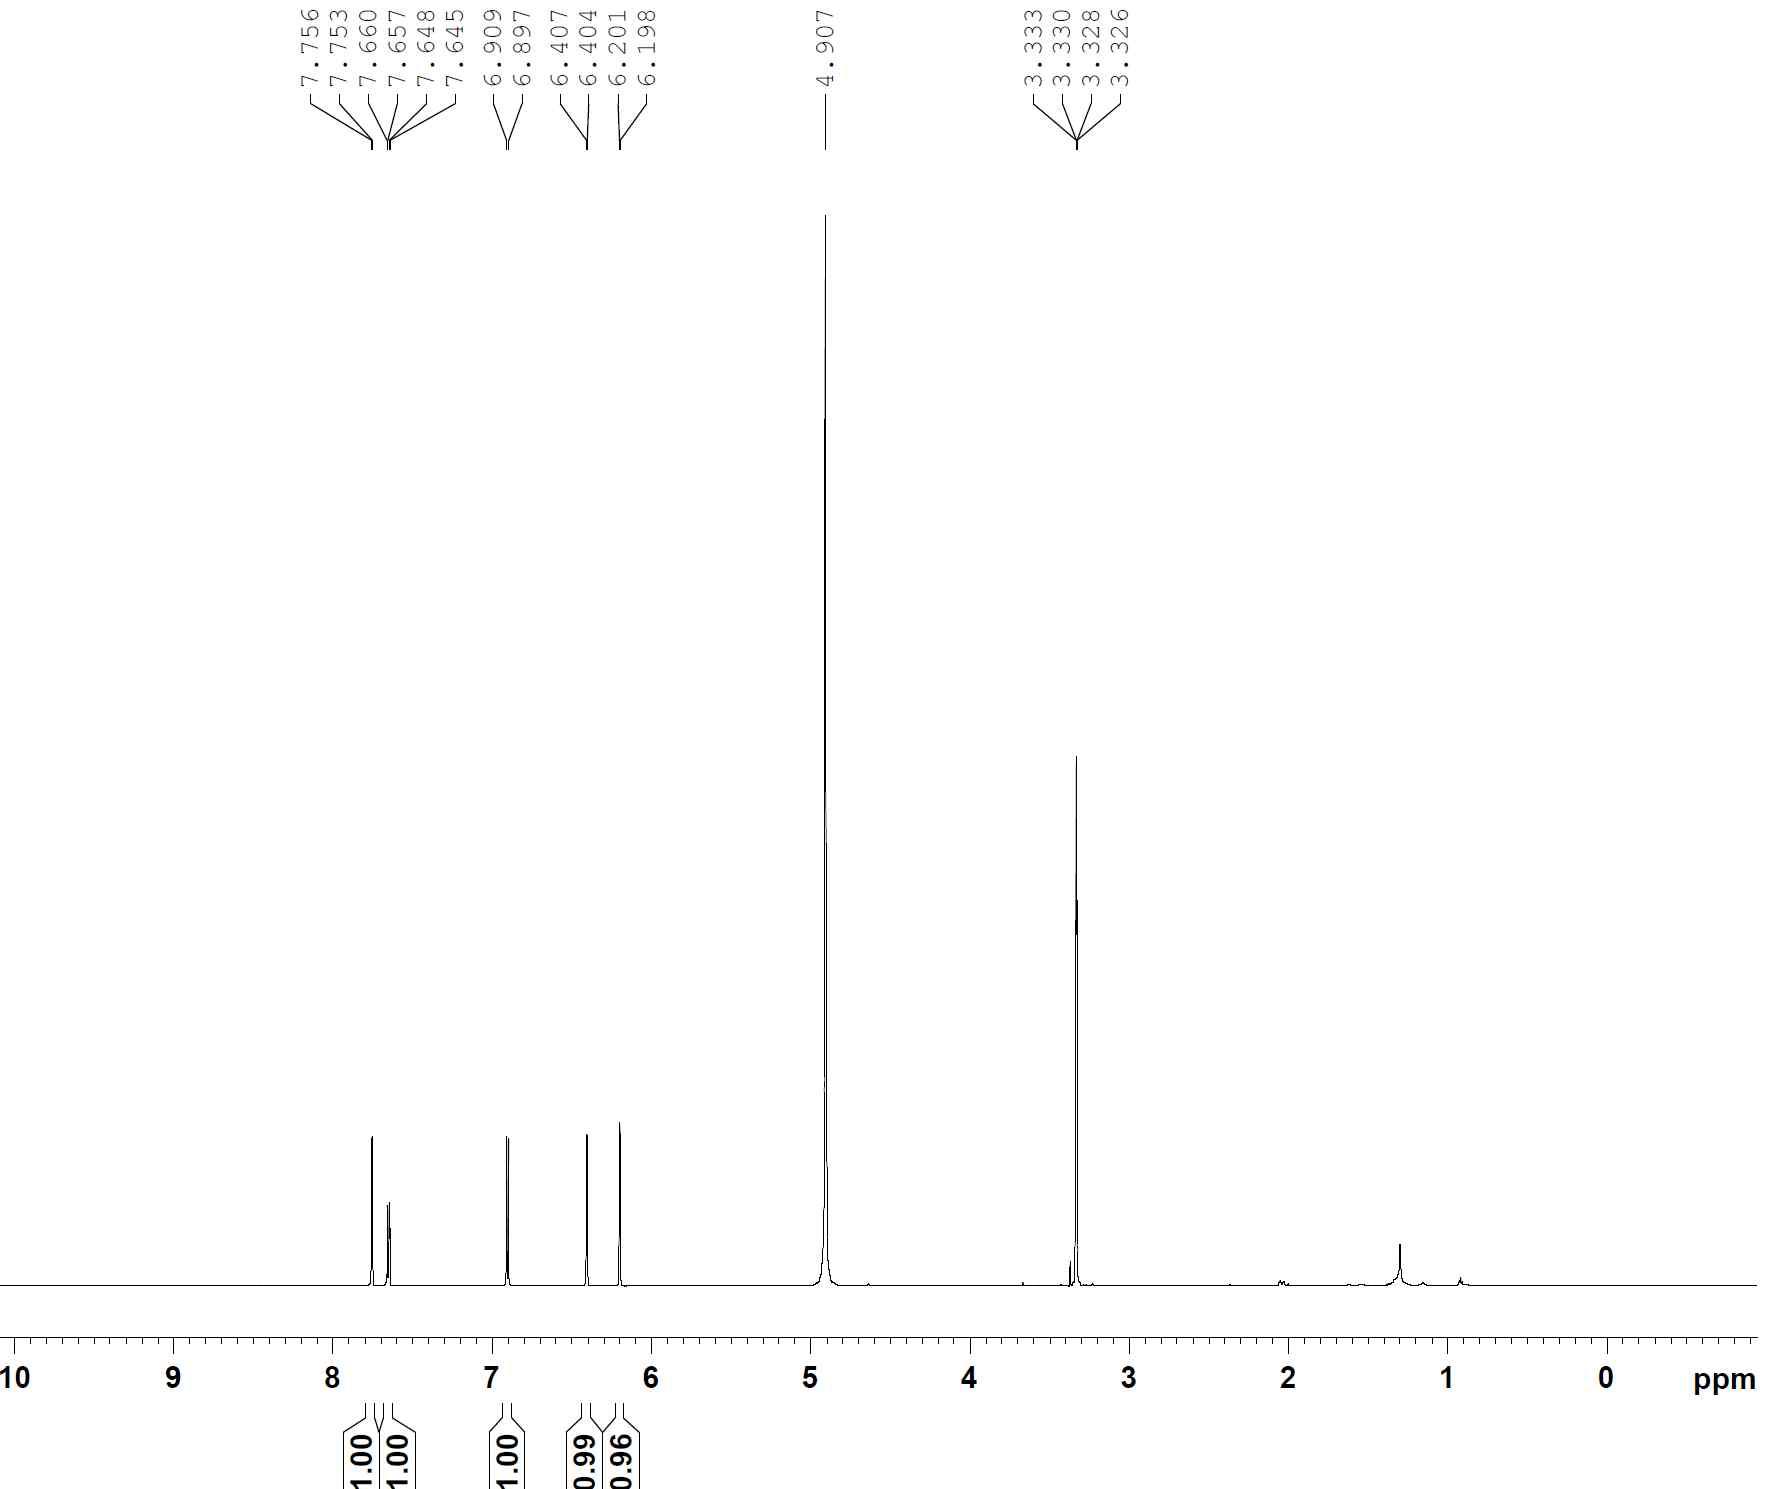 1H-NMR spectrum of compound 12